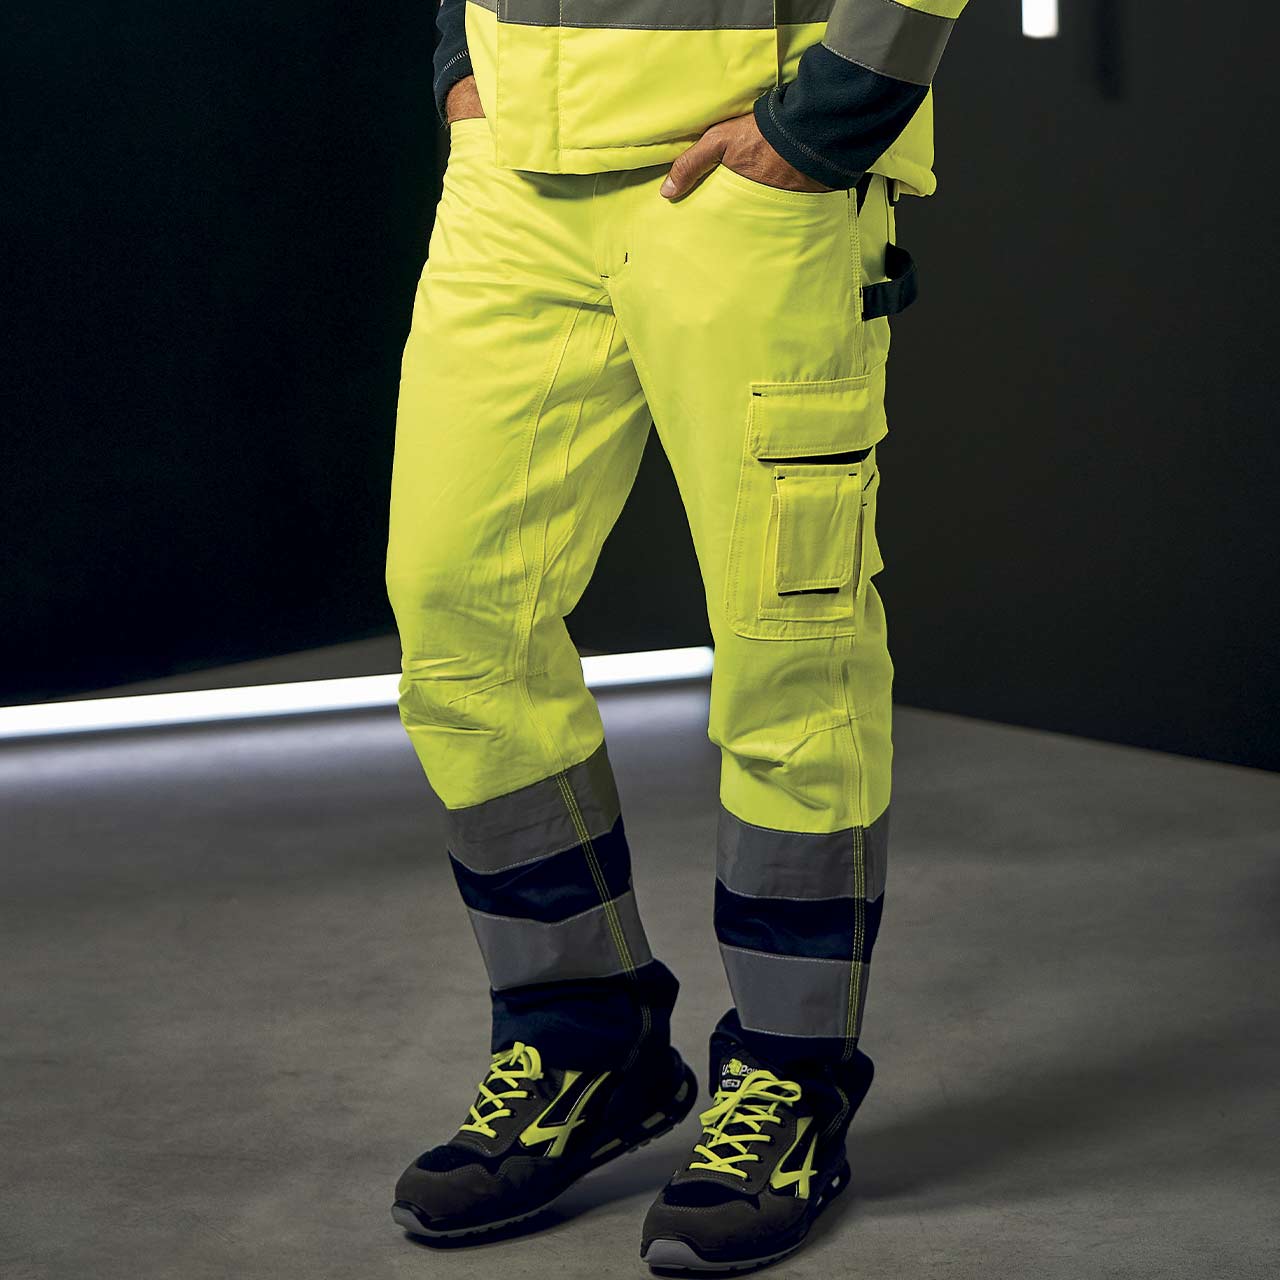 pantalone da lavoro upower modello radiant colore yellow fluo dettaglio tasca